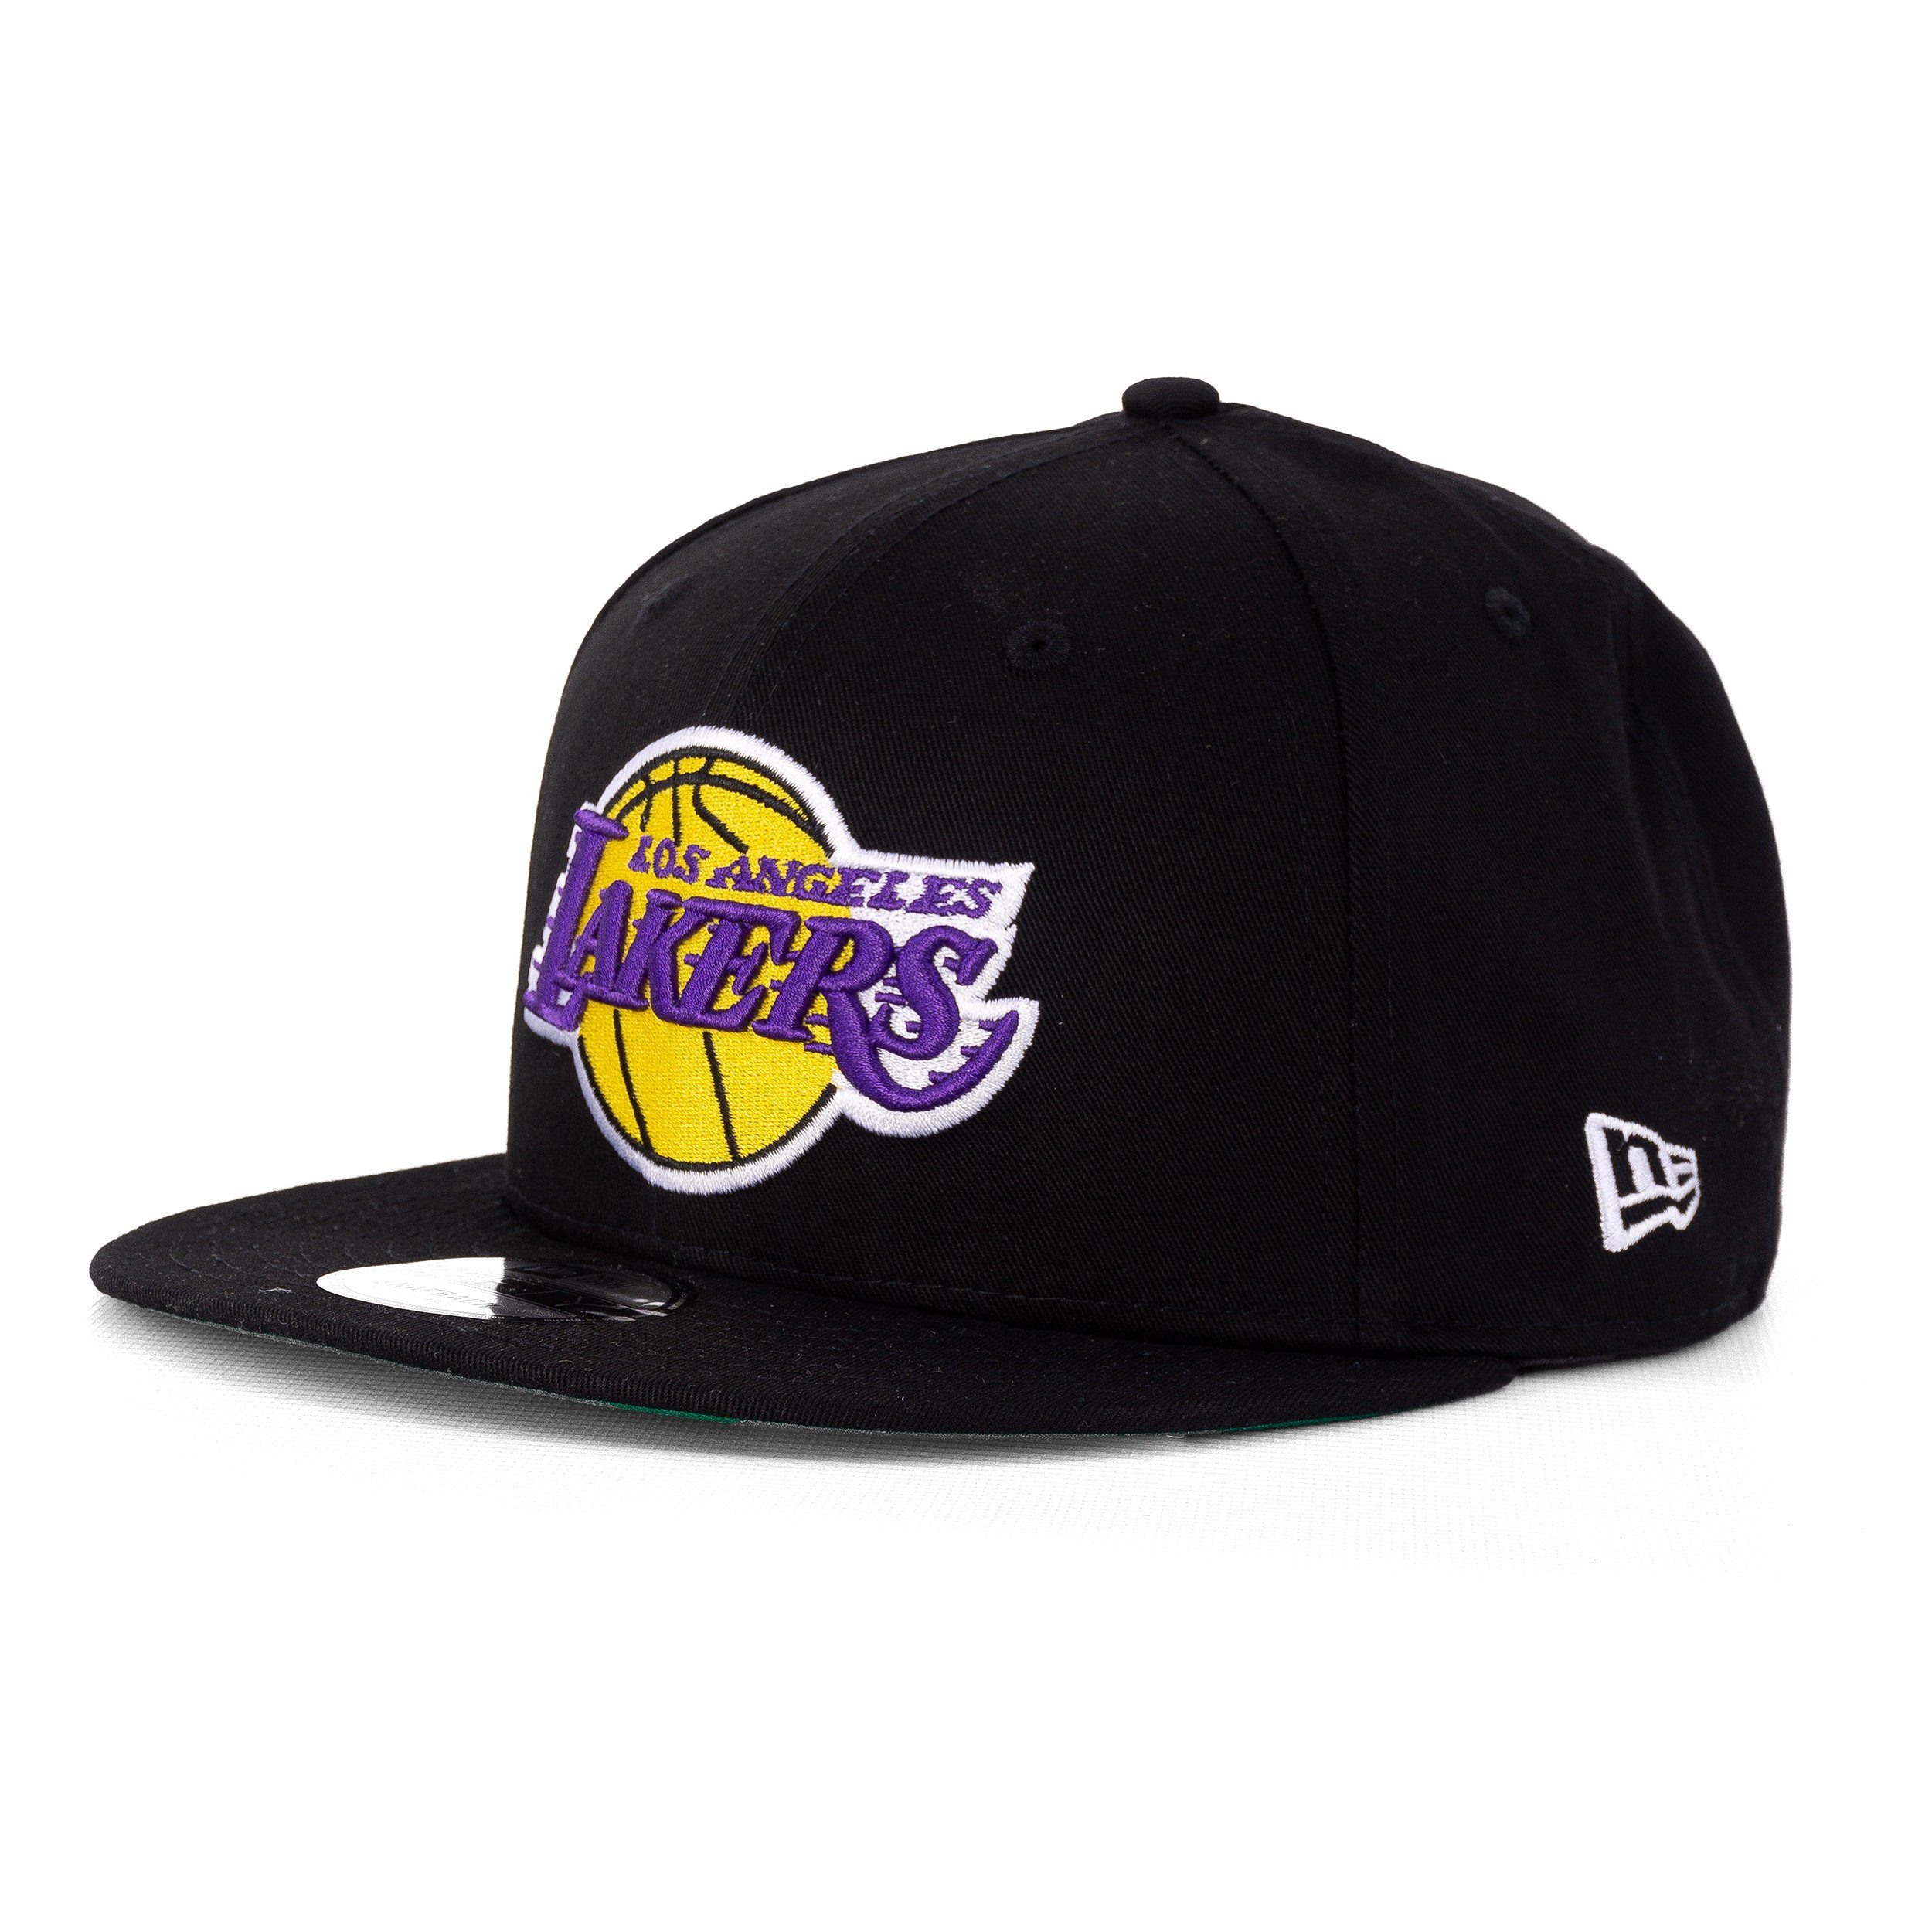 New Era Baseball Cap Era Cap Lakers NBA New 9Fifty LA